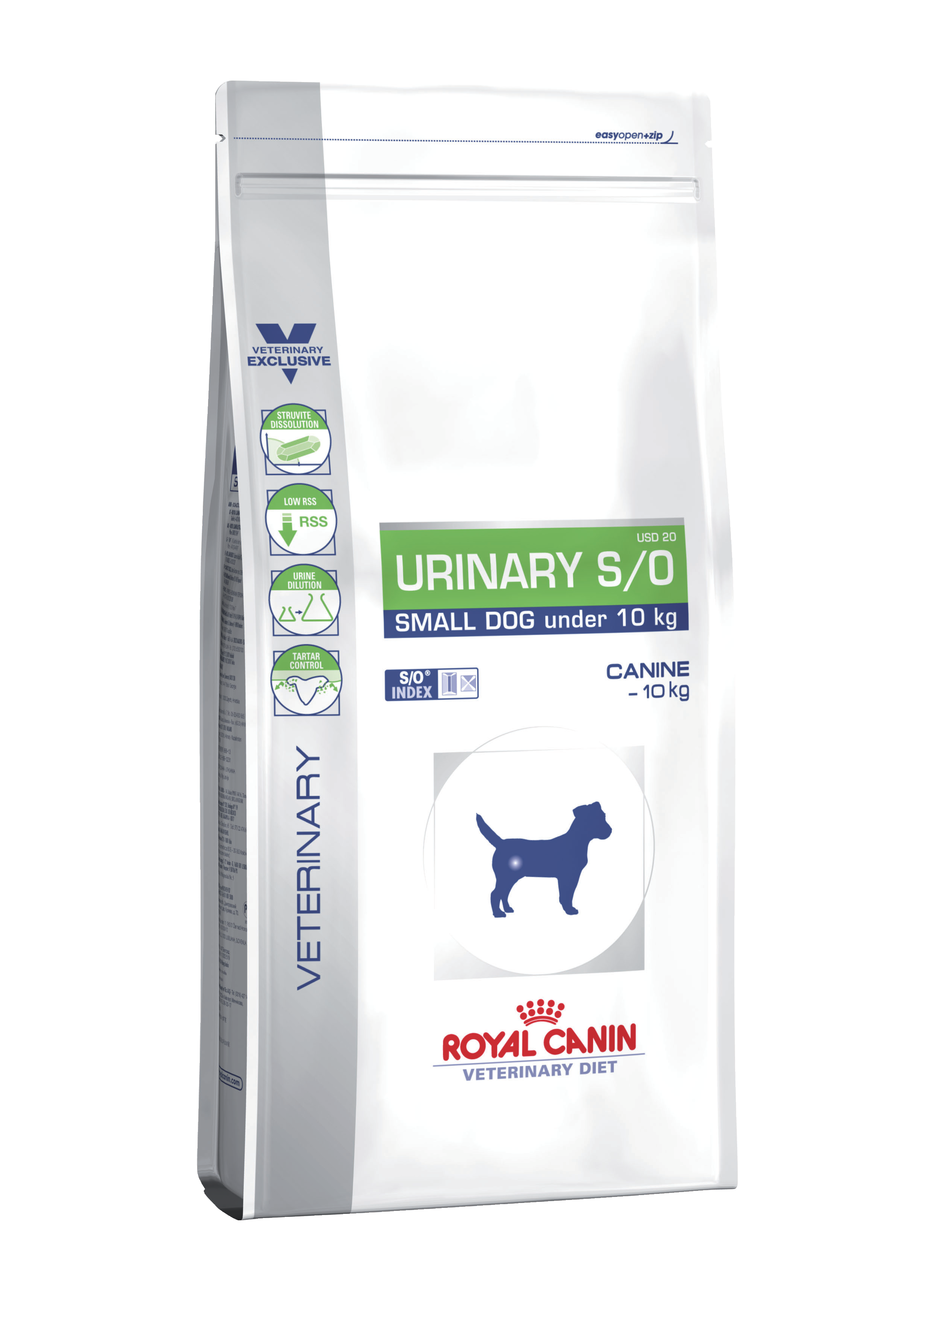 royal canin urinary small dog